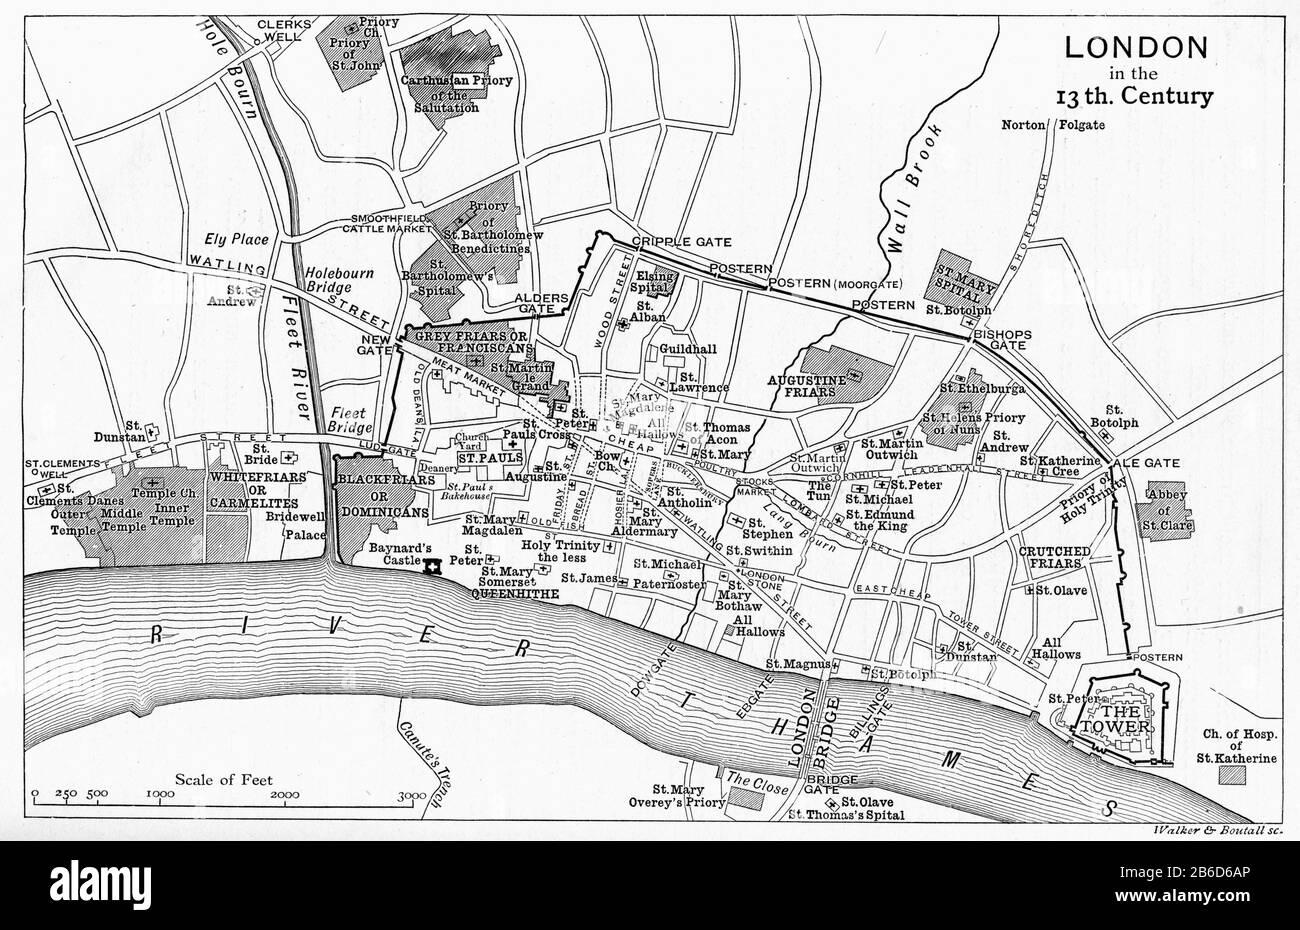 Un mapa de Londres en el siglo 13. En la Edad Media, Westminster era una pequeña ciudad río arriba de la ciudad de Londres. A partir del siglo XIII Londres creció en dos partes diferentes. Westminster se convirtió en la capital real y el centro de gobierno, mientras que la ciudad de Londres se convirtió en el centro del comercio y el comercio, una distinción que todavía es evidente hasta hoy. Foto de stock